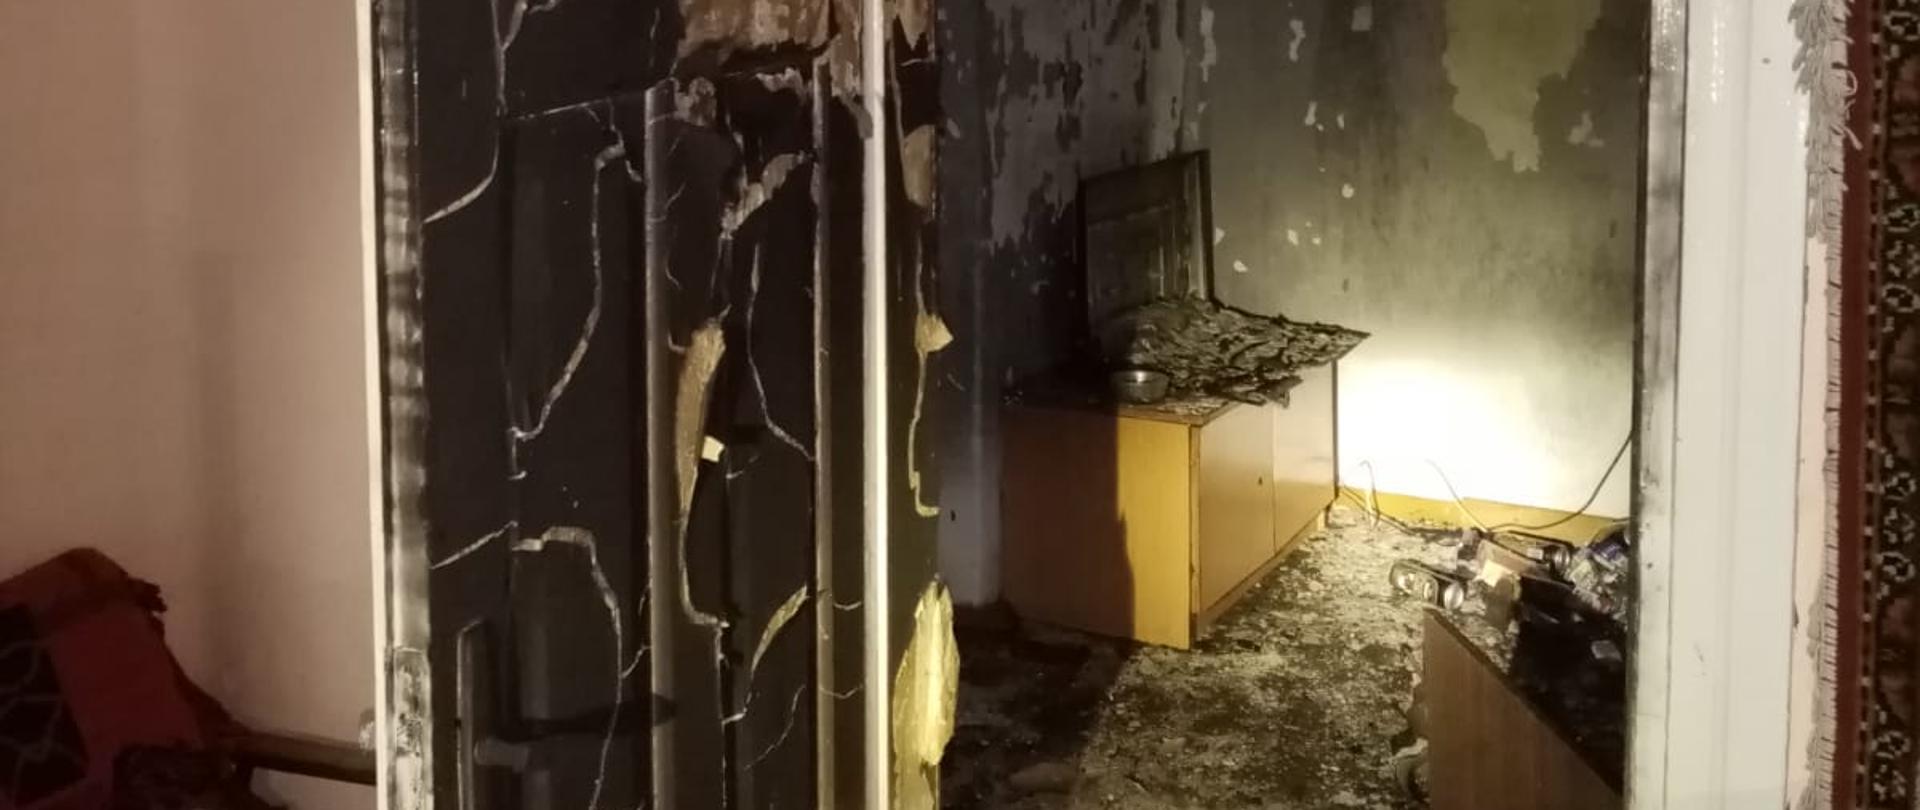 Budynek w którym miał miejsce pożar - wnętrze budynku. Widoczne okopcone drzwi oraz spalone wnętrze pokoju.